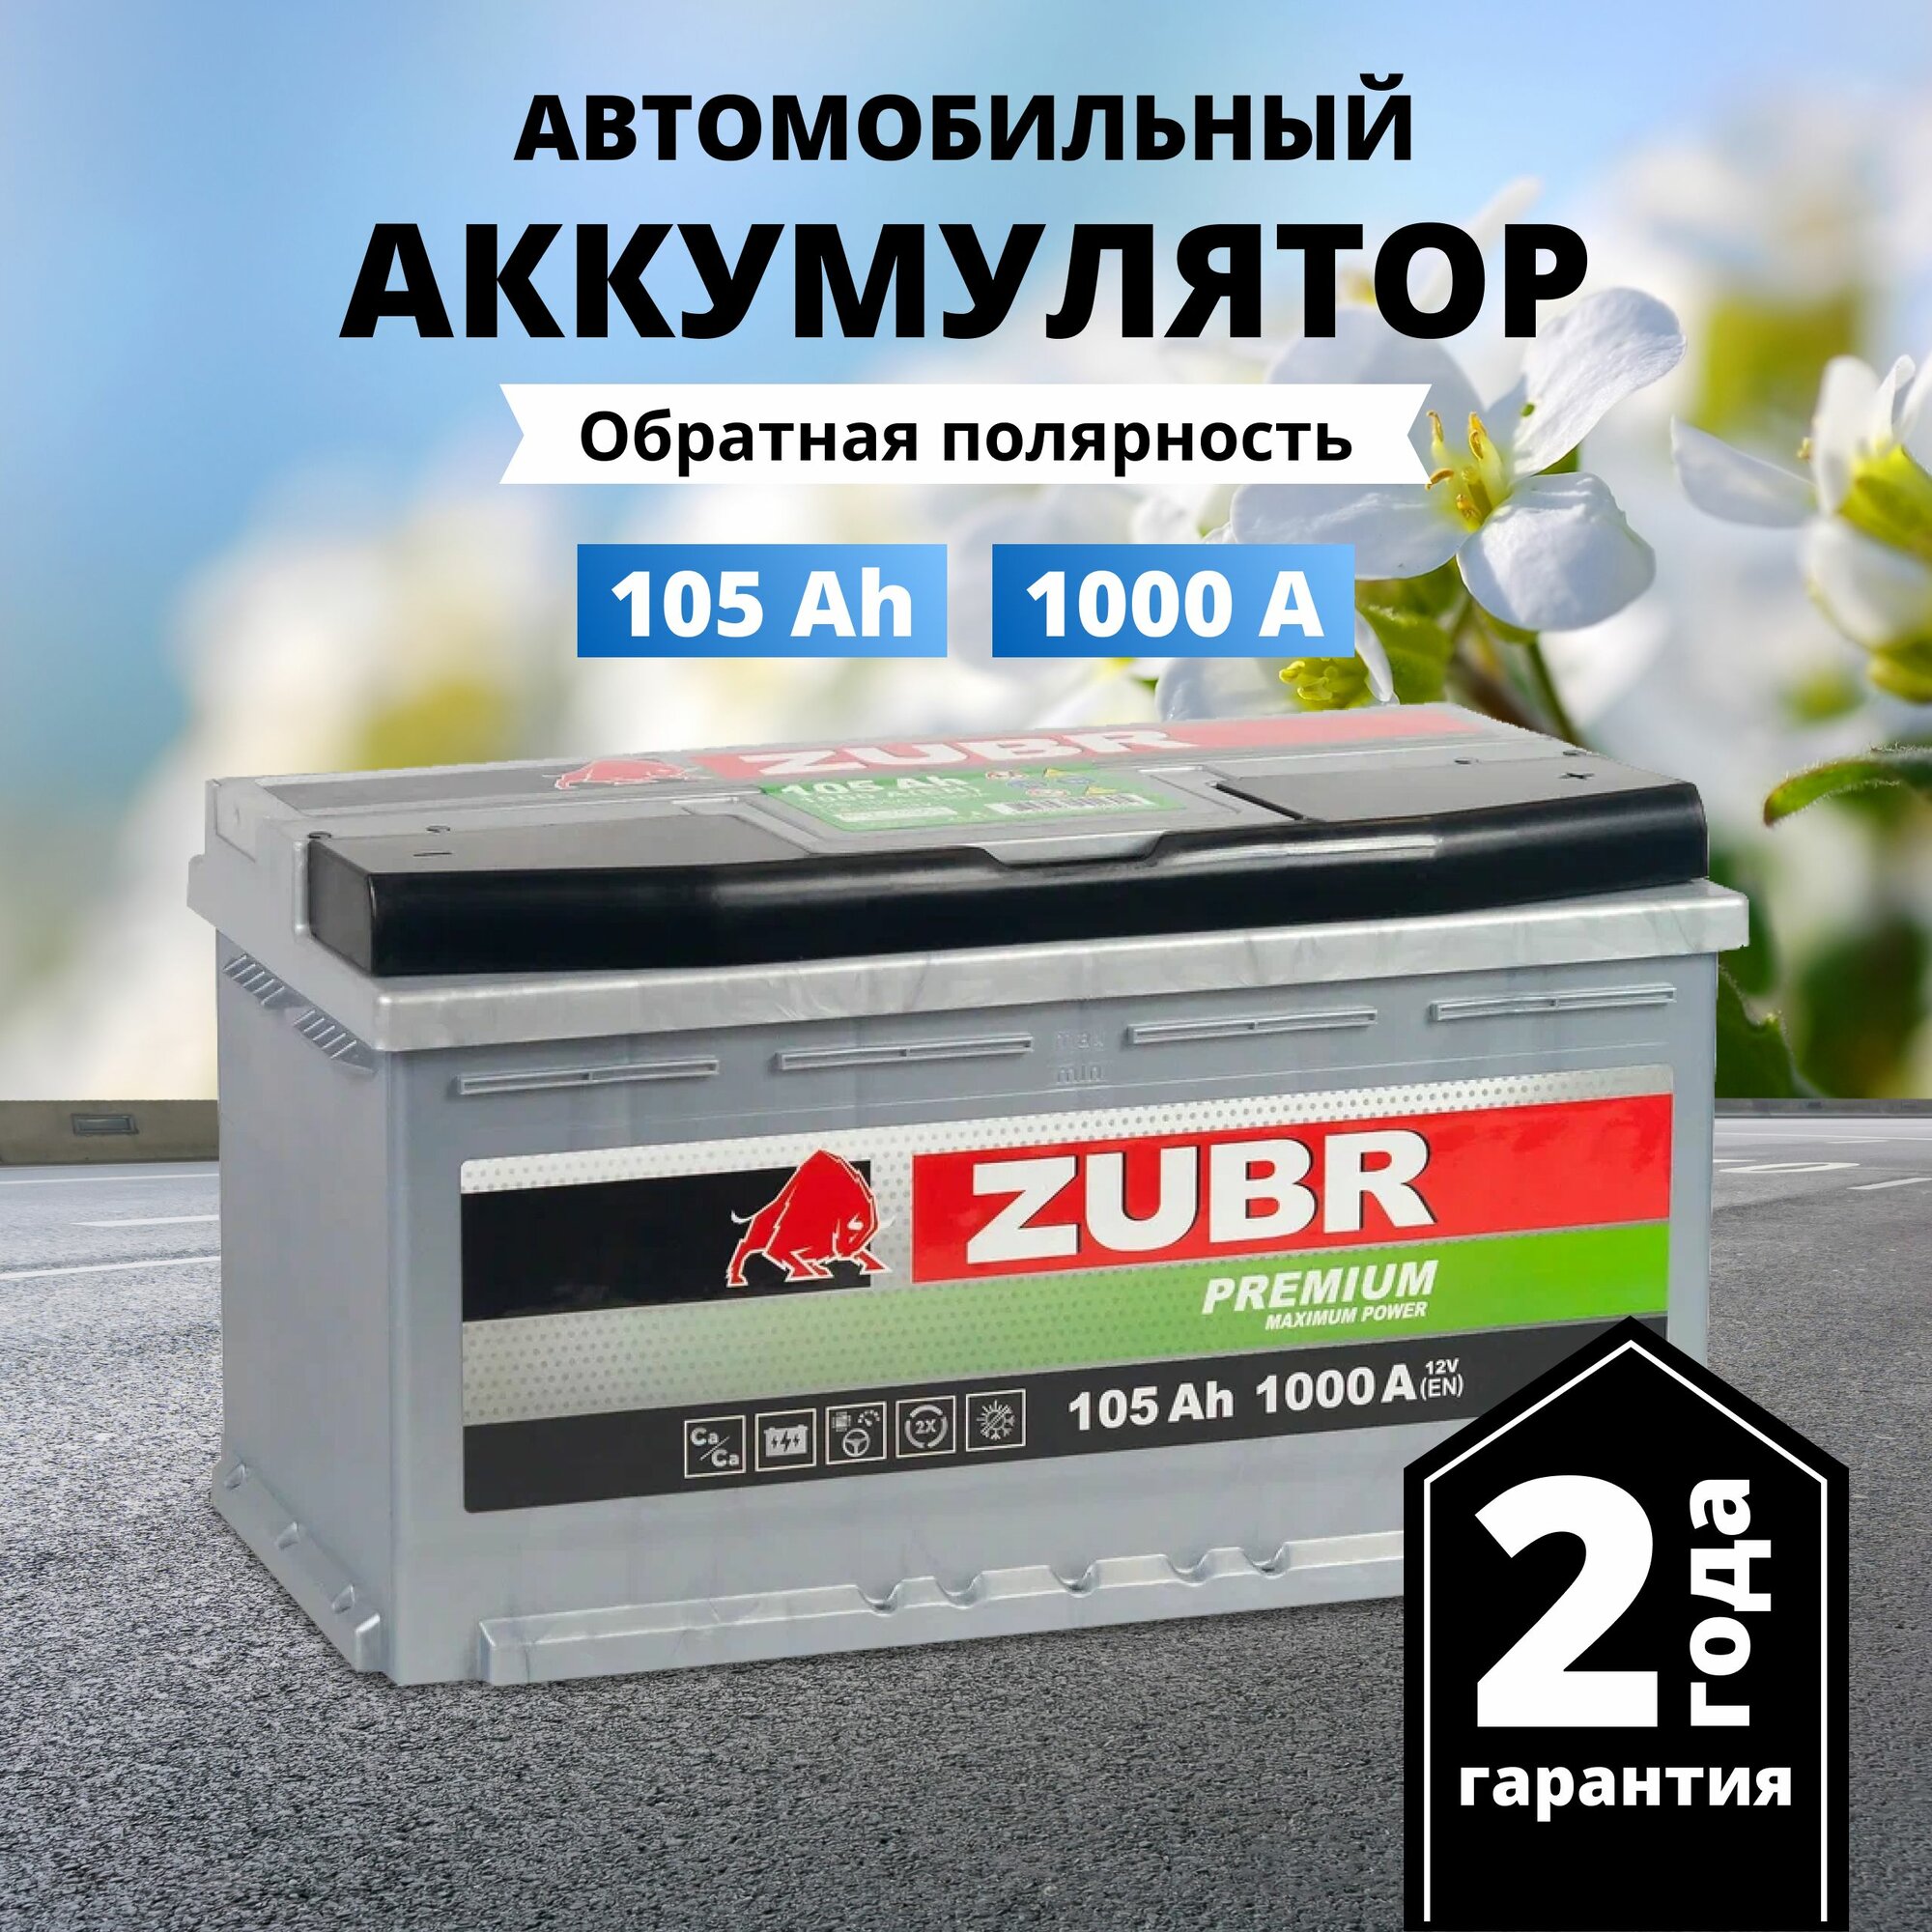 Аккумулятор автомобильный ZUBR Premium 105 Ah 1000 A обратная полярность 353x175x190